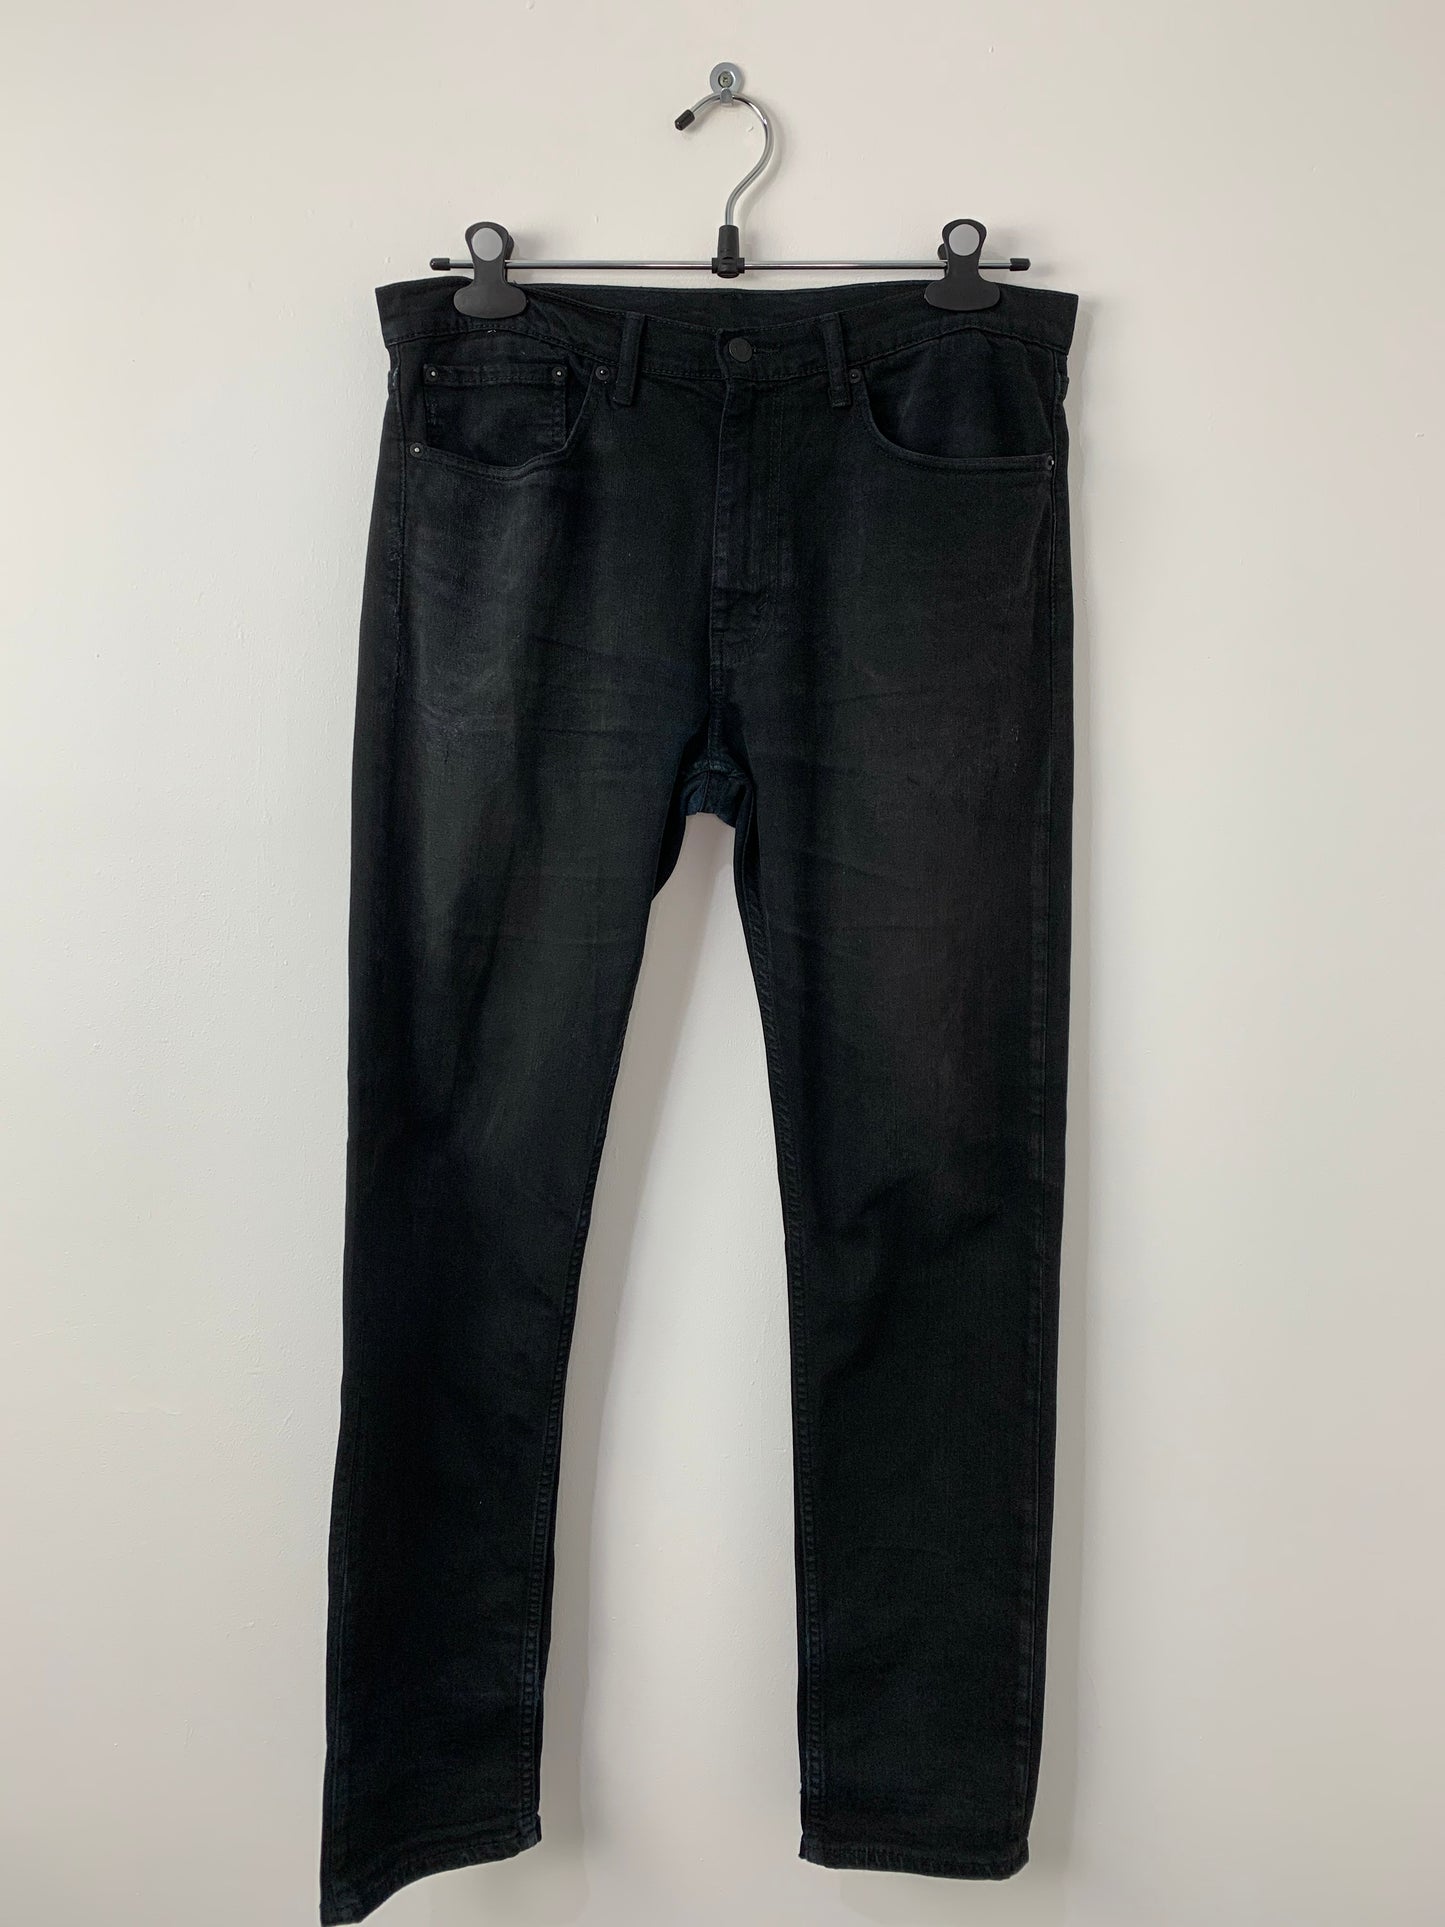 Vintage Levi's 508 Jeans Black